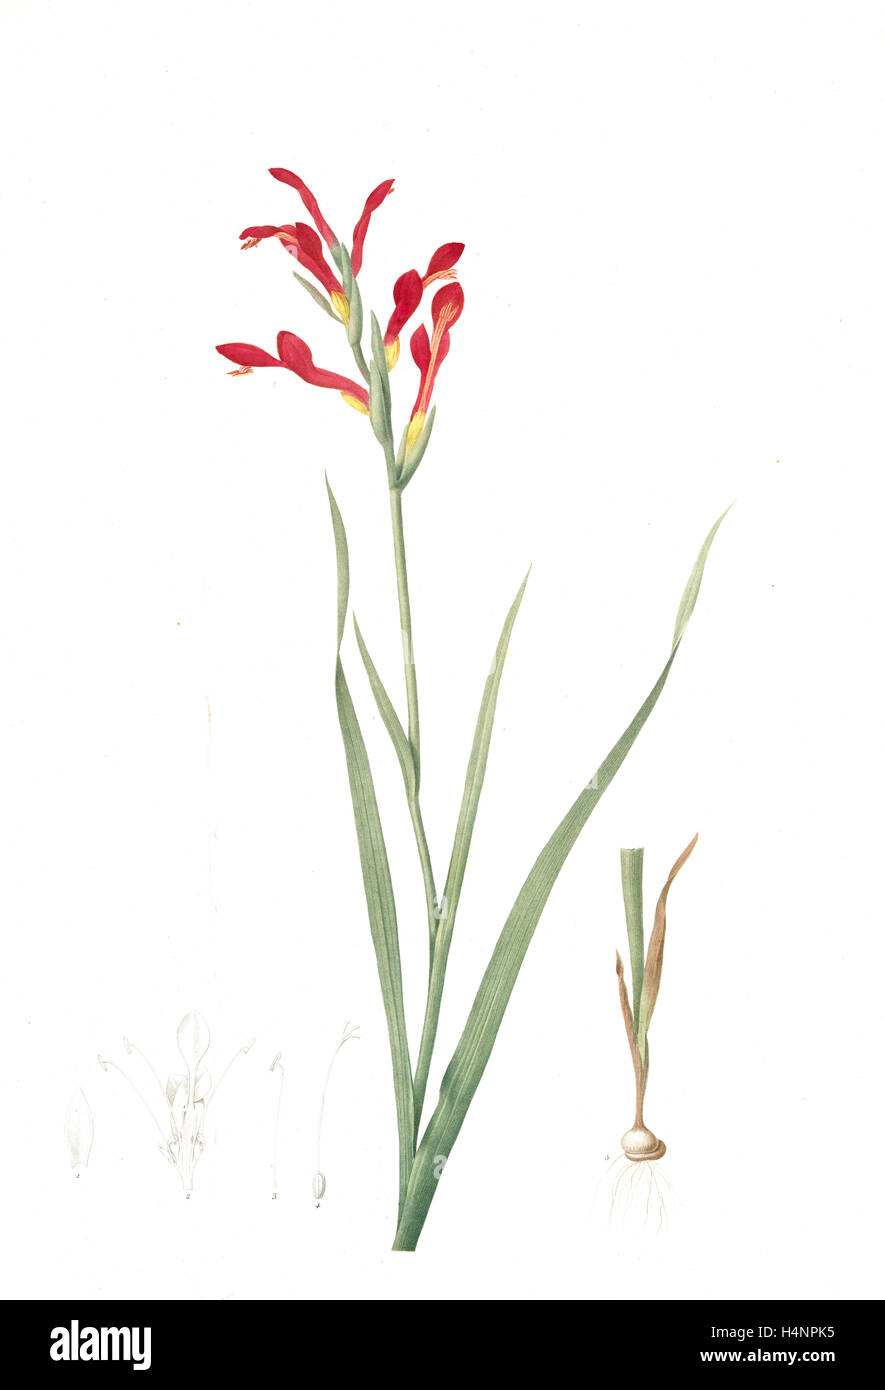 Antholyza cunonia, Antholyse papilionacée, Gladiolus; Sword Lily; Corn flag; Scarlet-flowered Antholyza, Redouté, Pierre Joseph Stock Photo